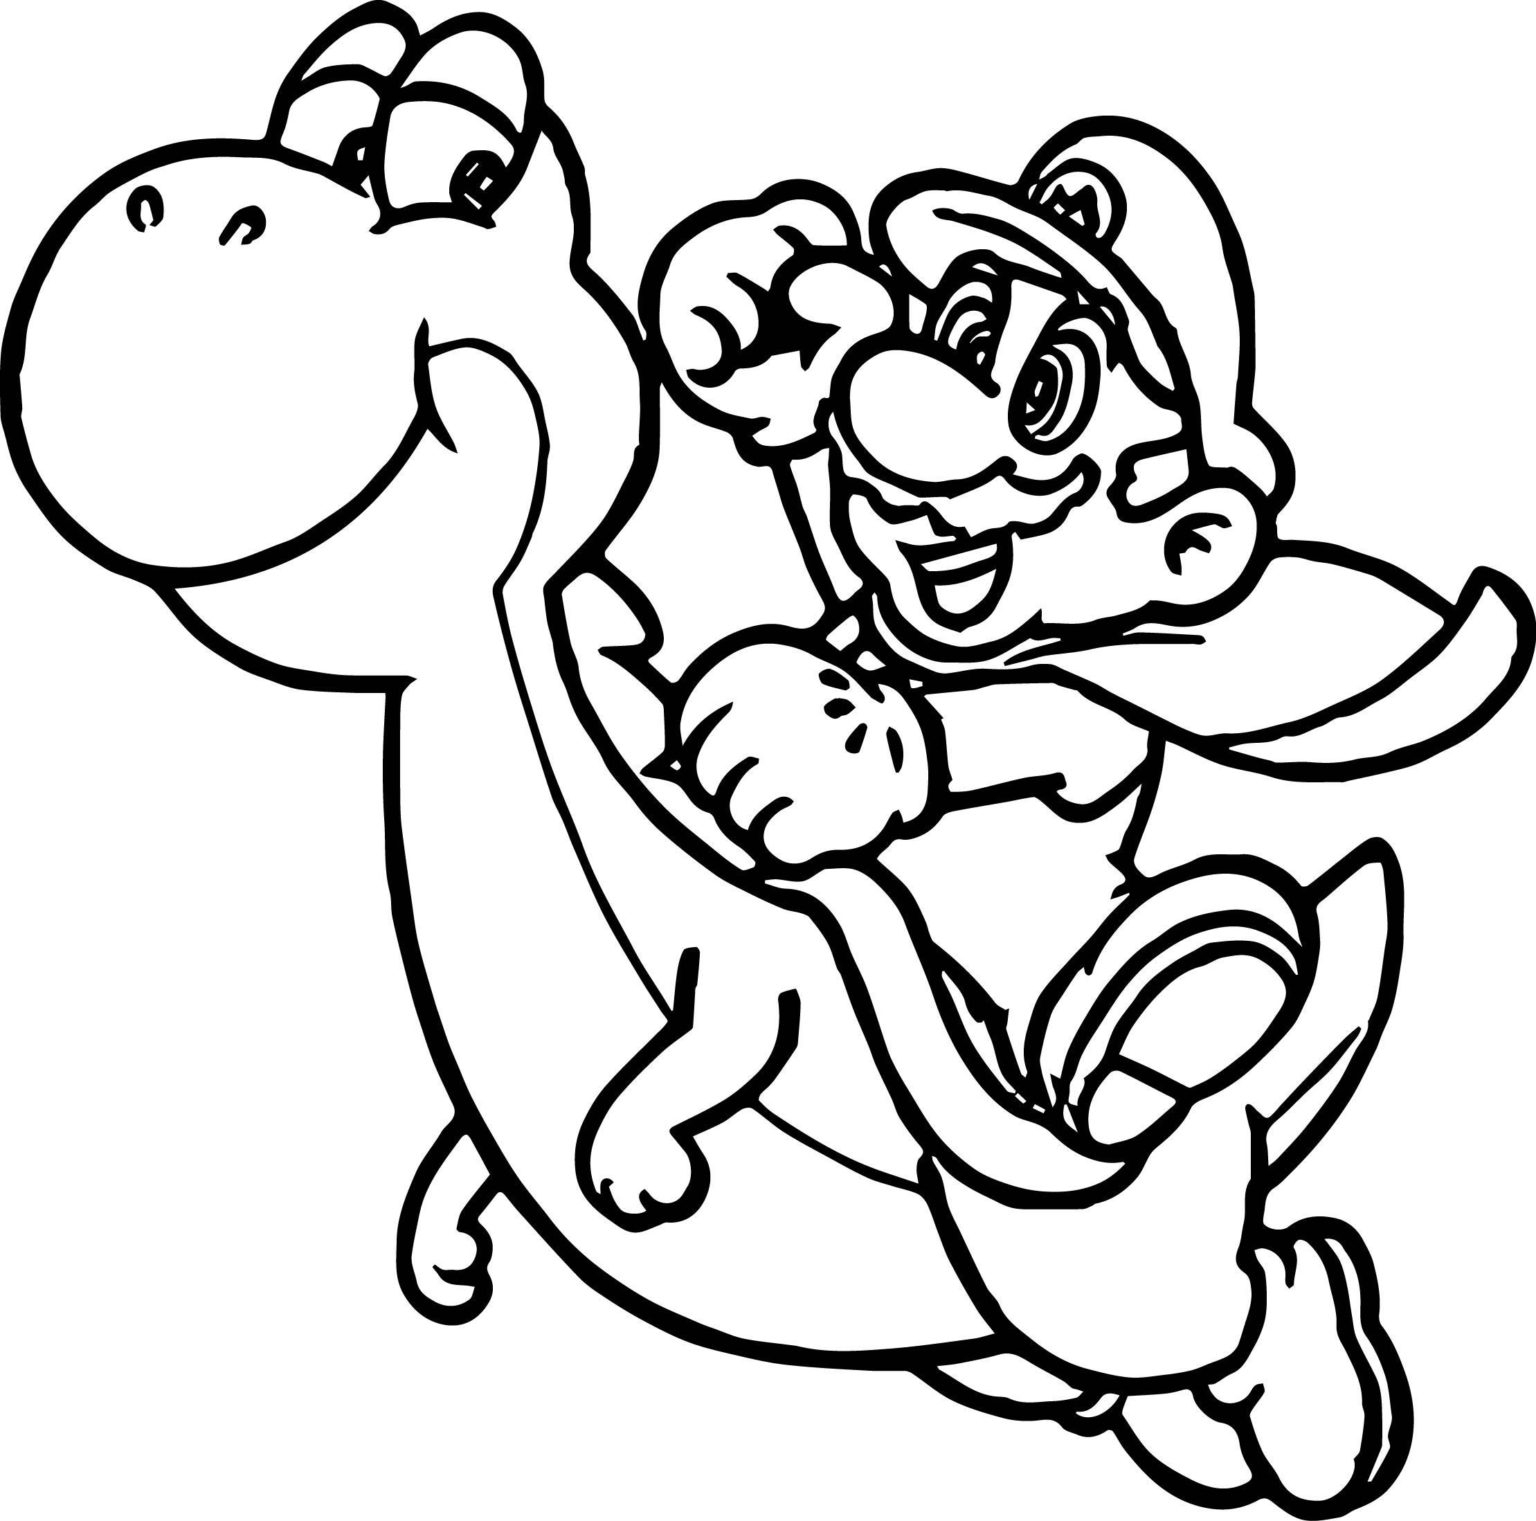 Coloriage Mario Gratuits À Imprimer (Coloriages, Dessins Et Pdf) - Page concernant Dessin Mario A Imprimer